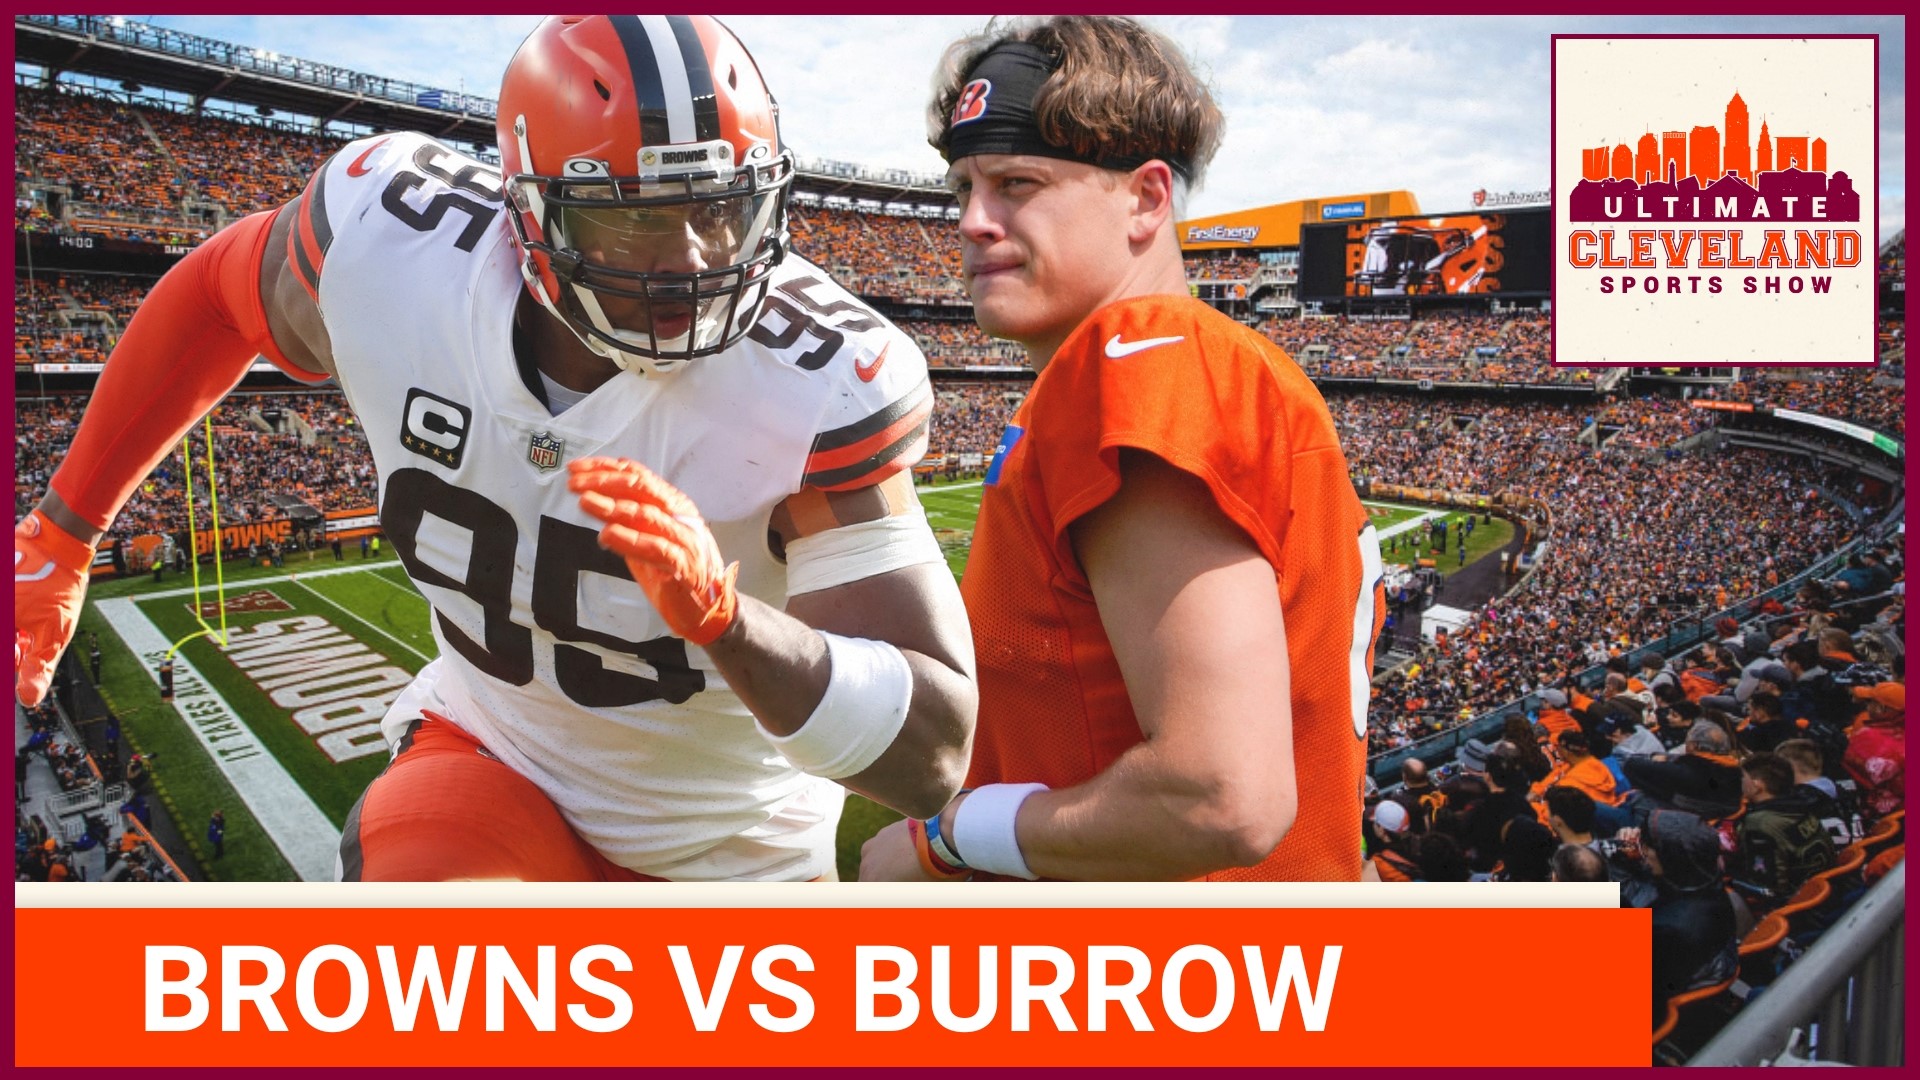 Browns vs. Bengals in NFL Week 1 in photos